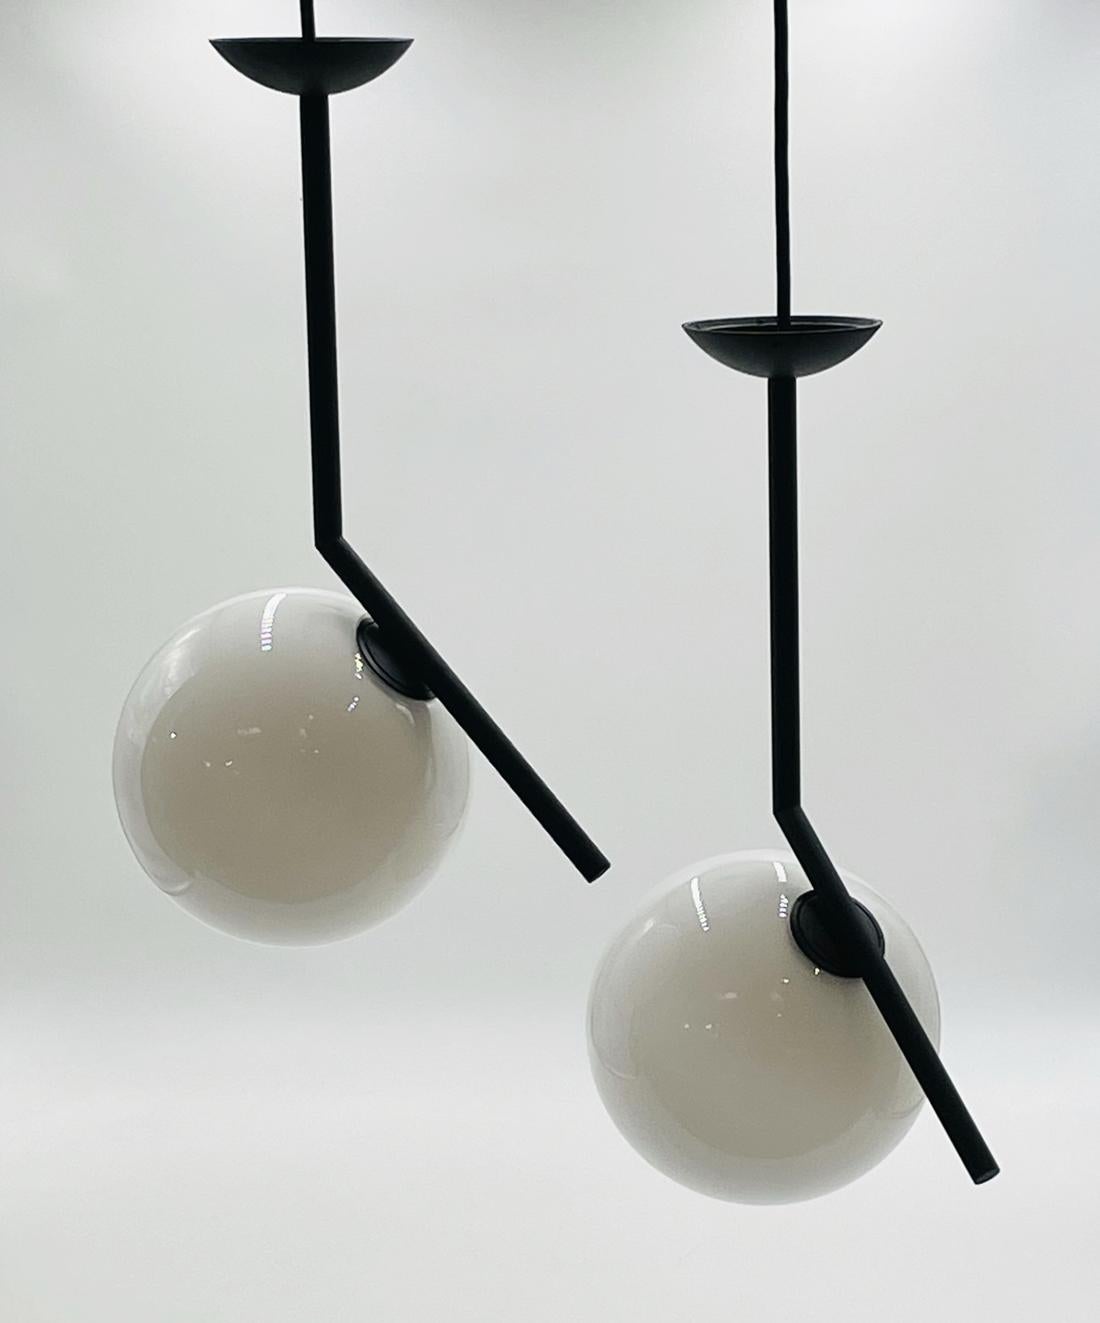 La lampe suspendue ICS de Flos est un exemple d'équilibre. Après avoir visionné un clip vidéo d'un jongleur de contact, le designer Michael Anastassiades a été inspiré par l'habileté nécessaire pour faire tourner et déplacer l'ensemble de sphères